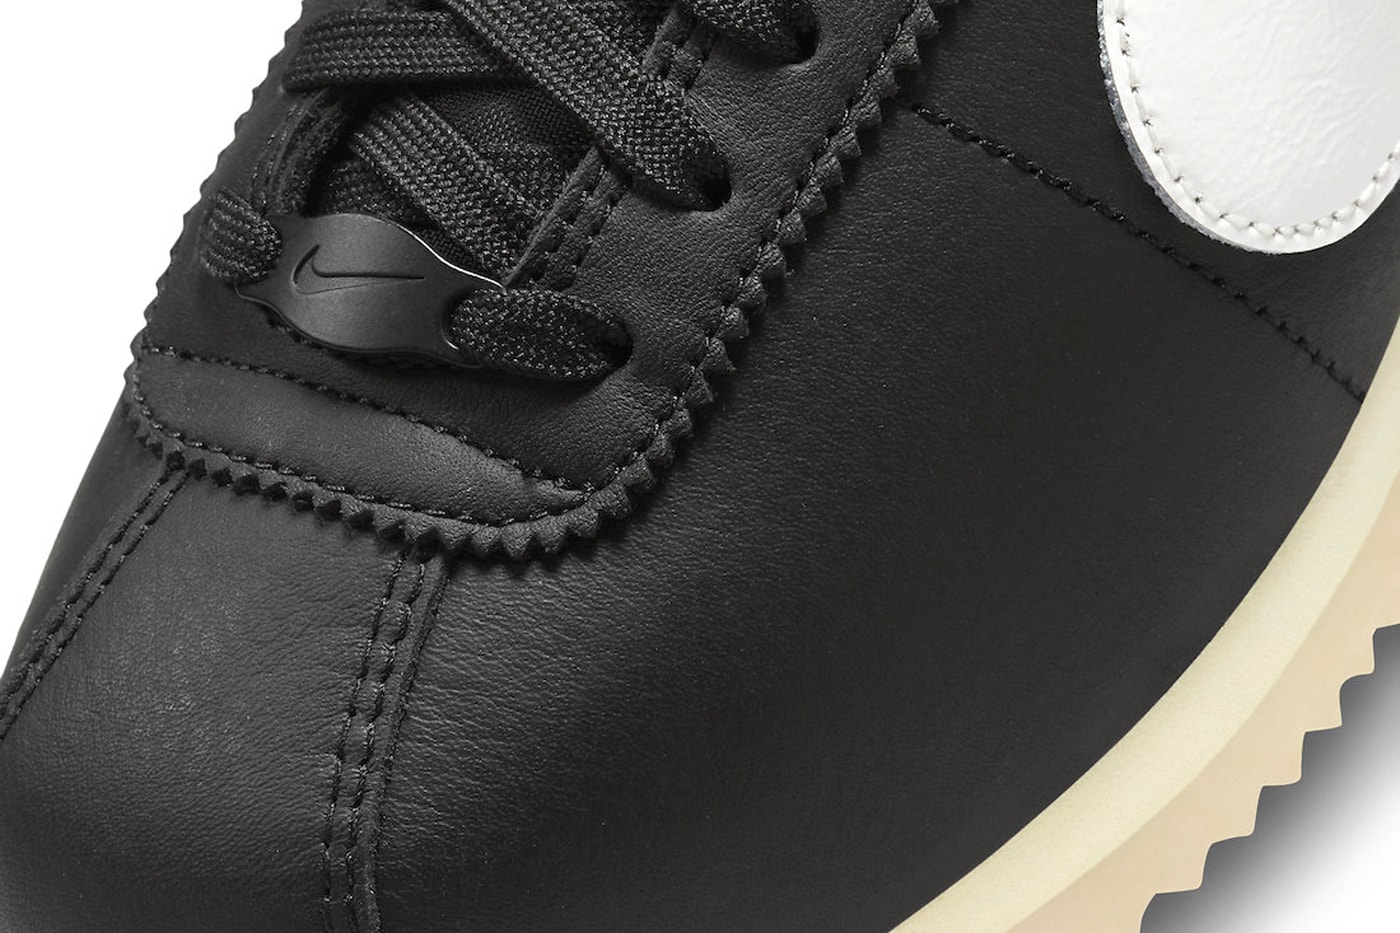 Nike Cortez Black Suede FJ2530-001 Release Info